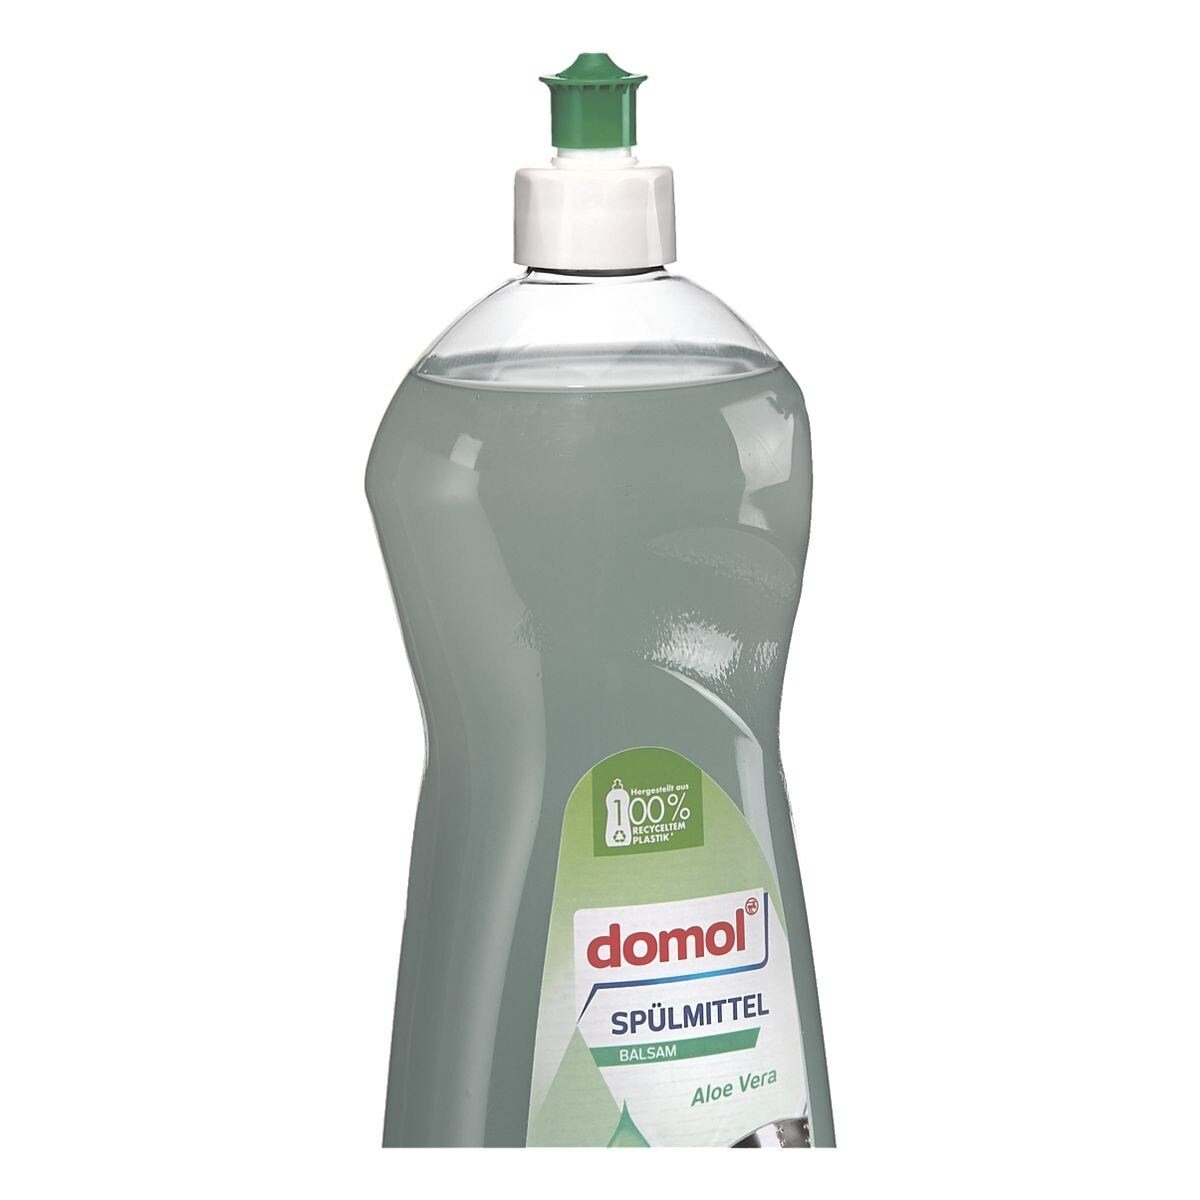 Domol Liter, Aloe Vera (1 starke pH-neutral) Balsam Fettlösekraft, Geschirrspülmittel